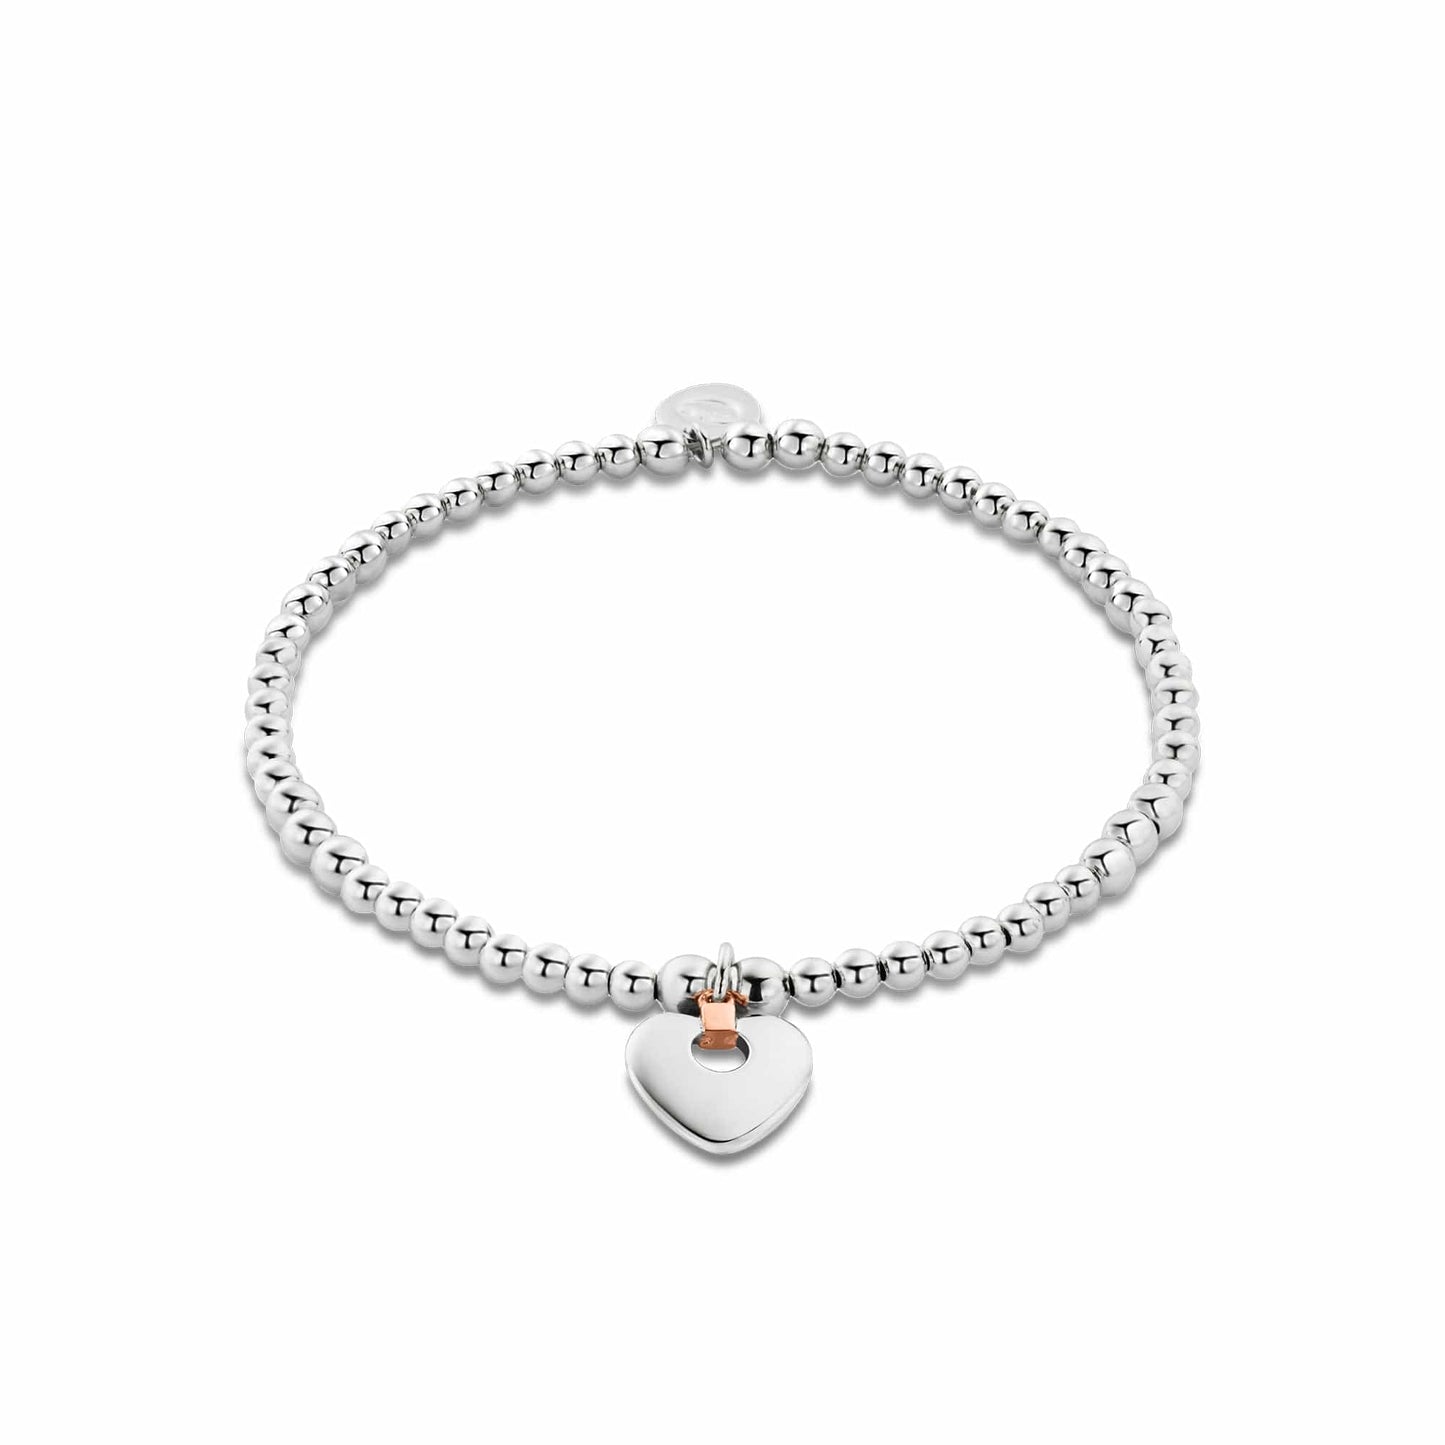 Cariad® Silver Affinity Bracelet